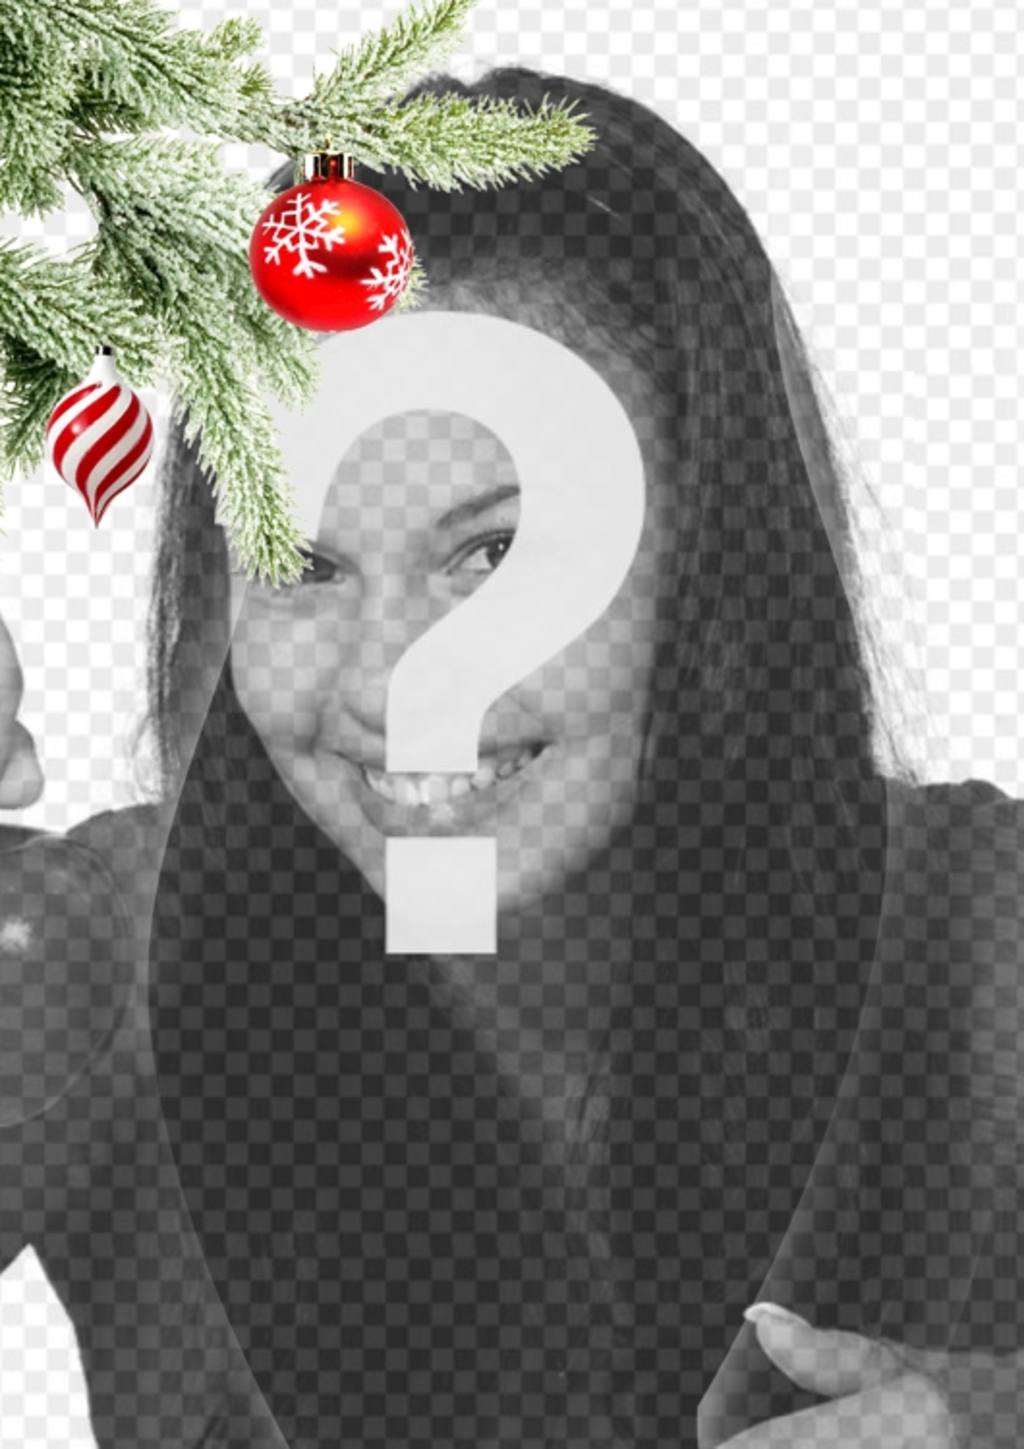 Postkarte / Weihnachts-Bilderrahmen wo Sie ein Bild. Auswirkung der verbesserten Kurven auf schwarzem Hintergrund. Im Vordergrund sehen wir einen Weihnachtsbaum Zweig hängend mit zwei Kugeln, eine in der Form von Eis oder Tornado, ist weiß und rot Spiralen, ist kugelförmig..